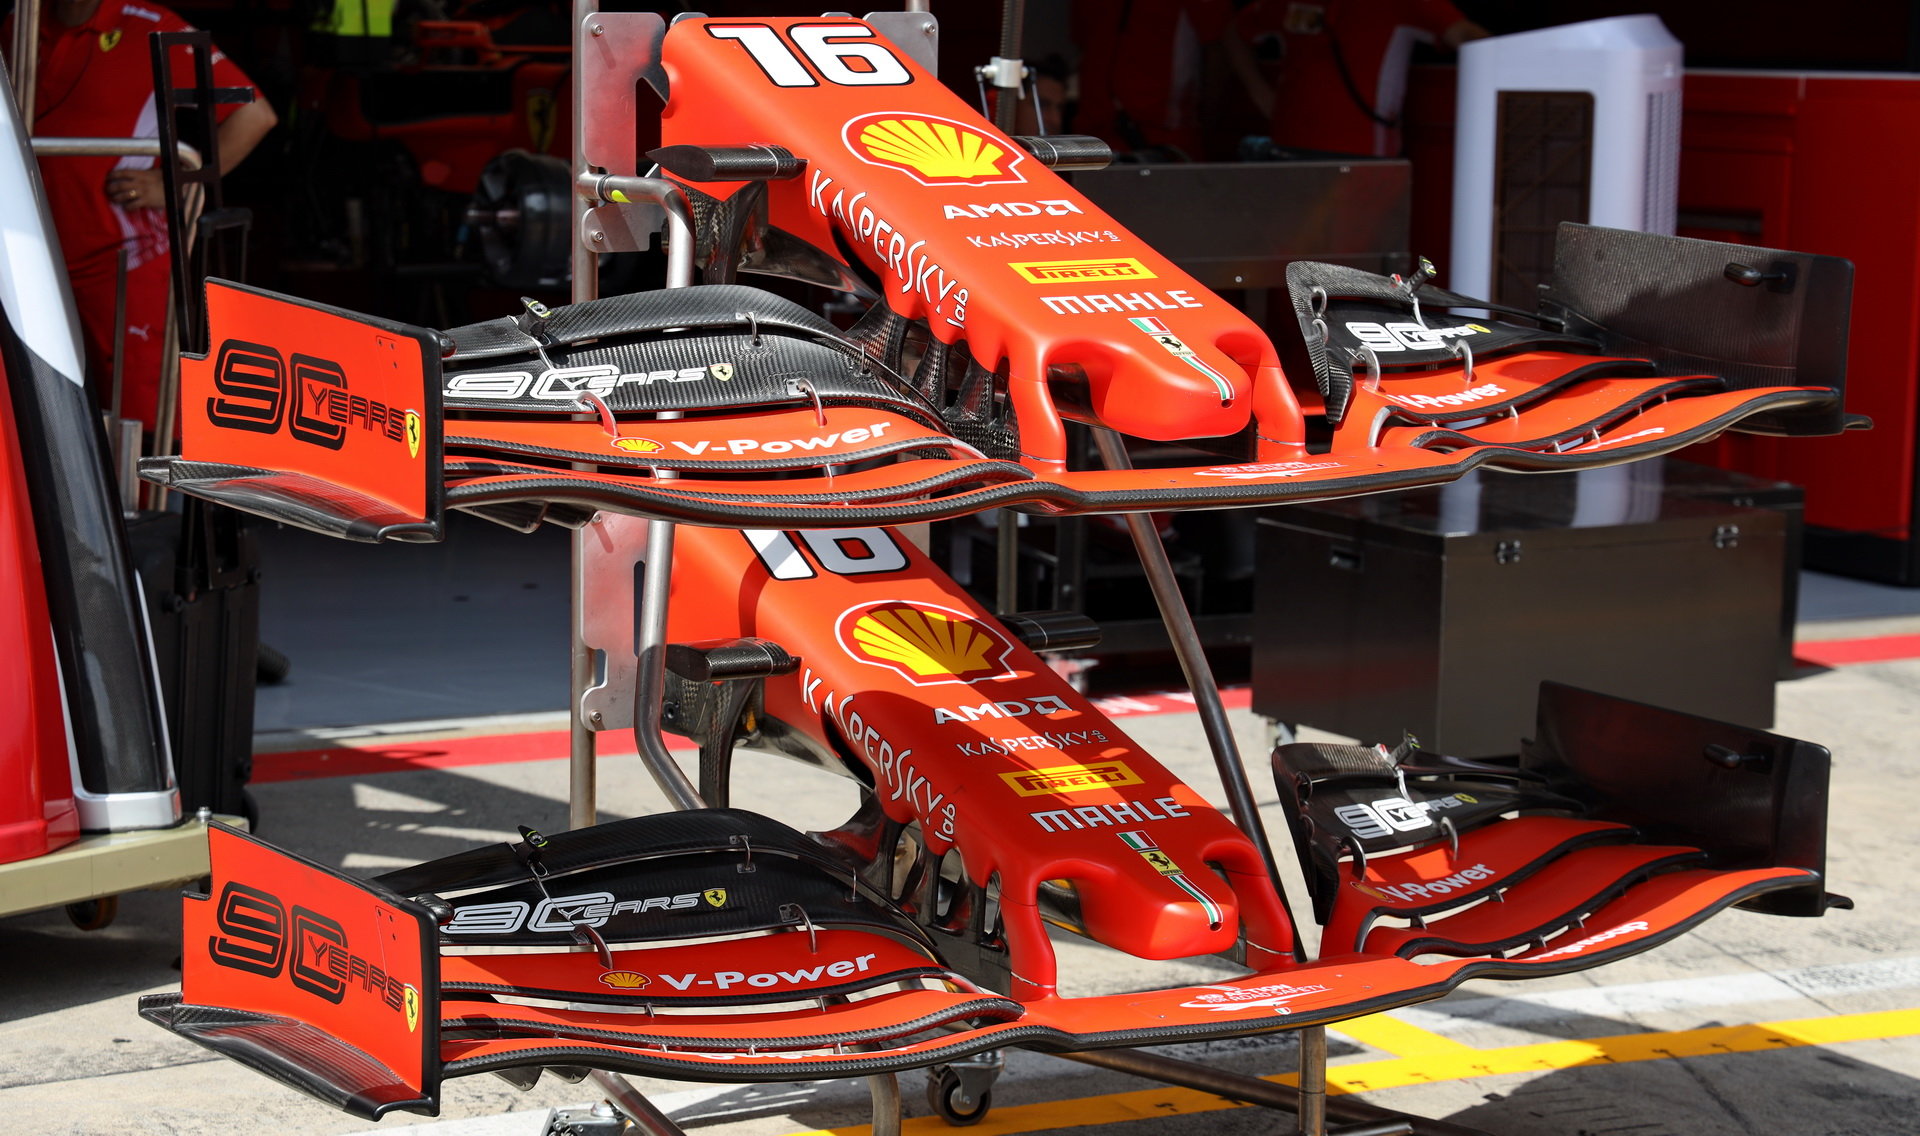 Přední křídlo Ferrari